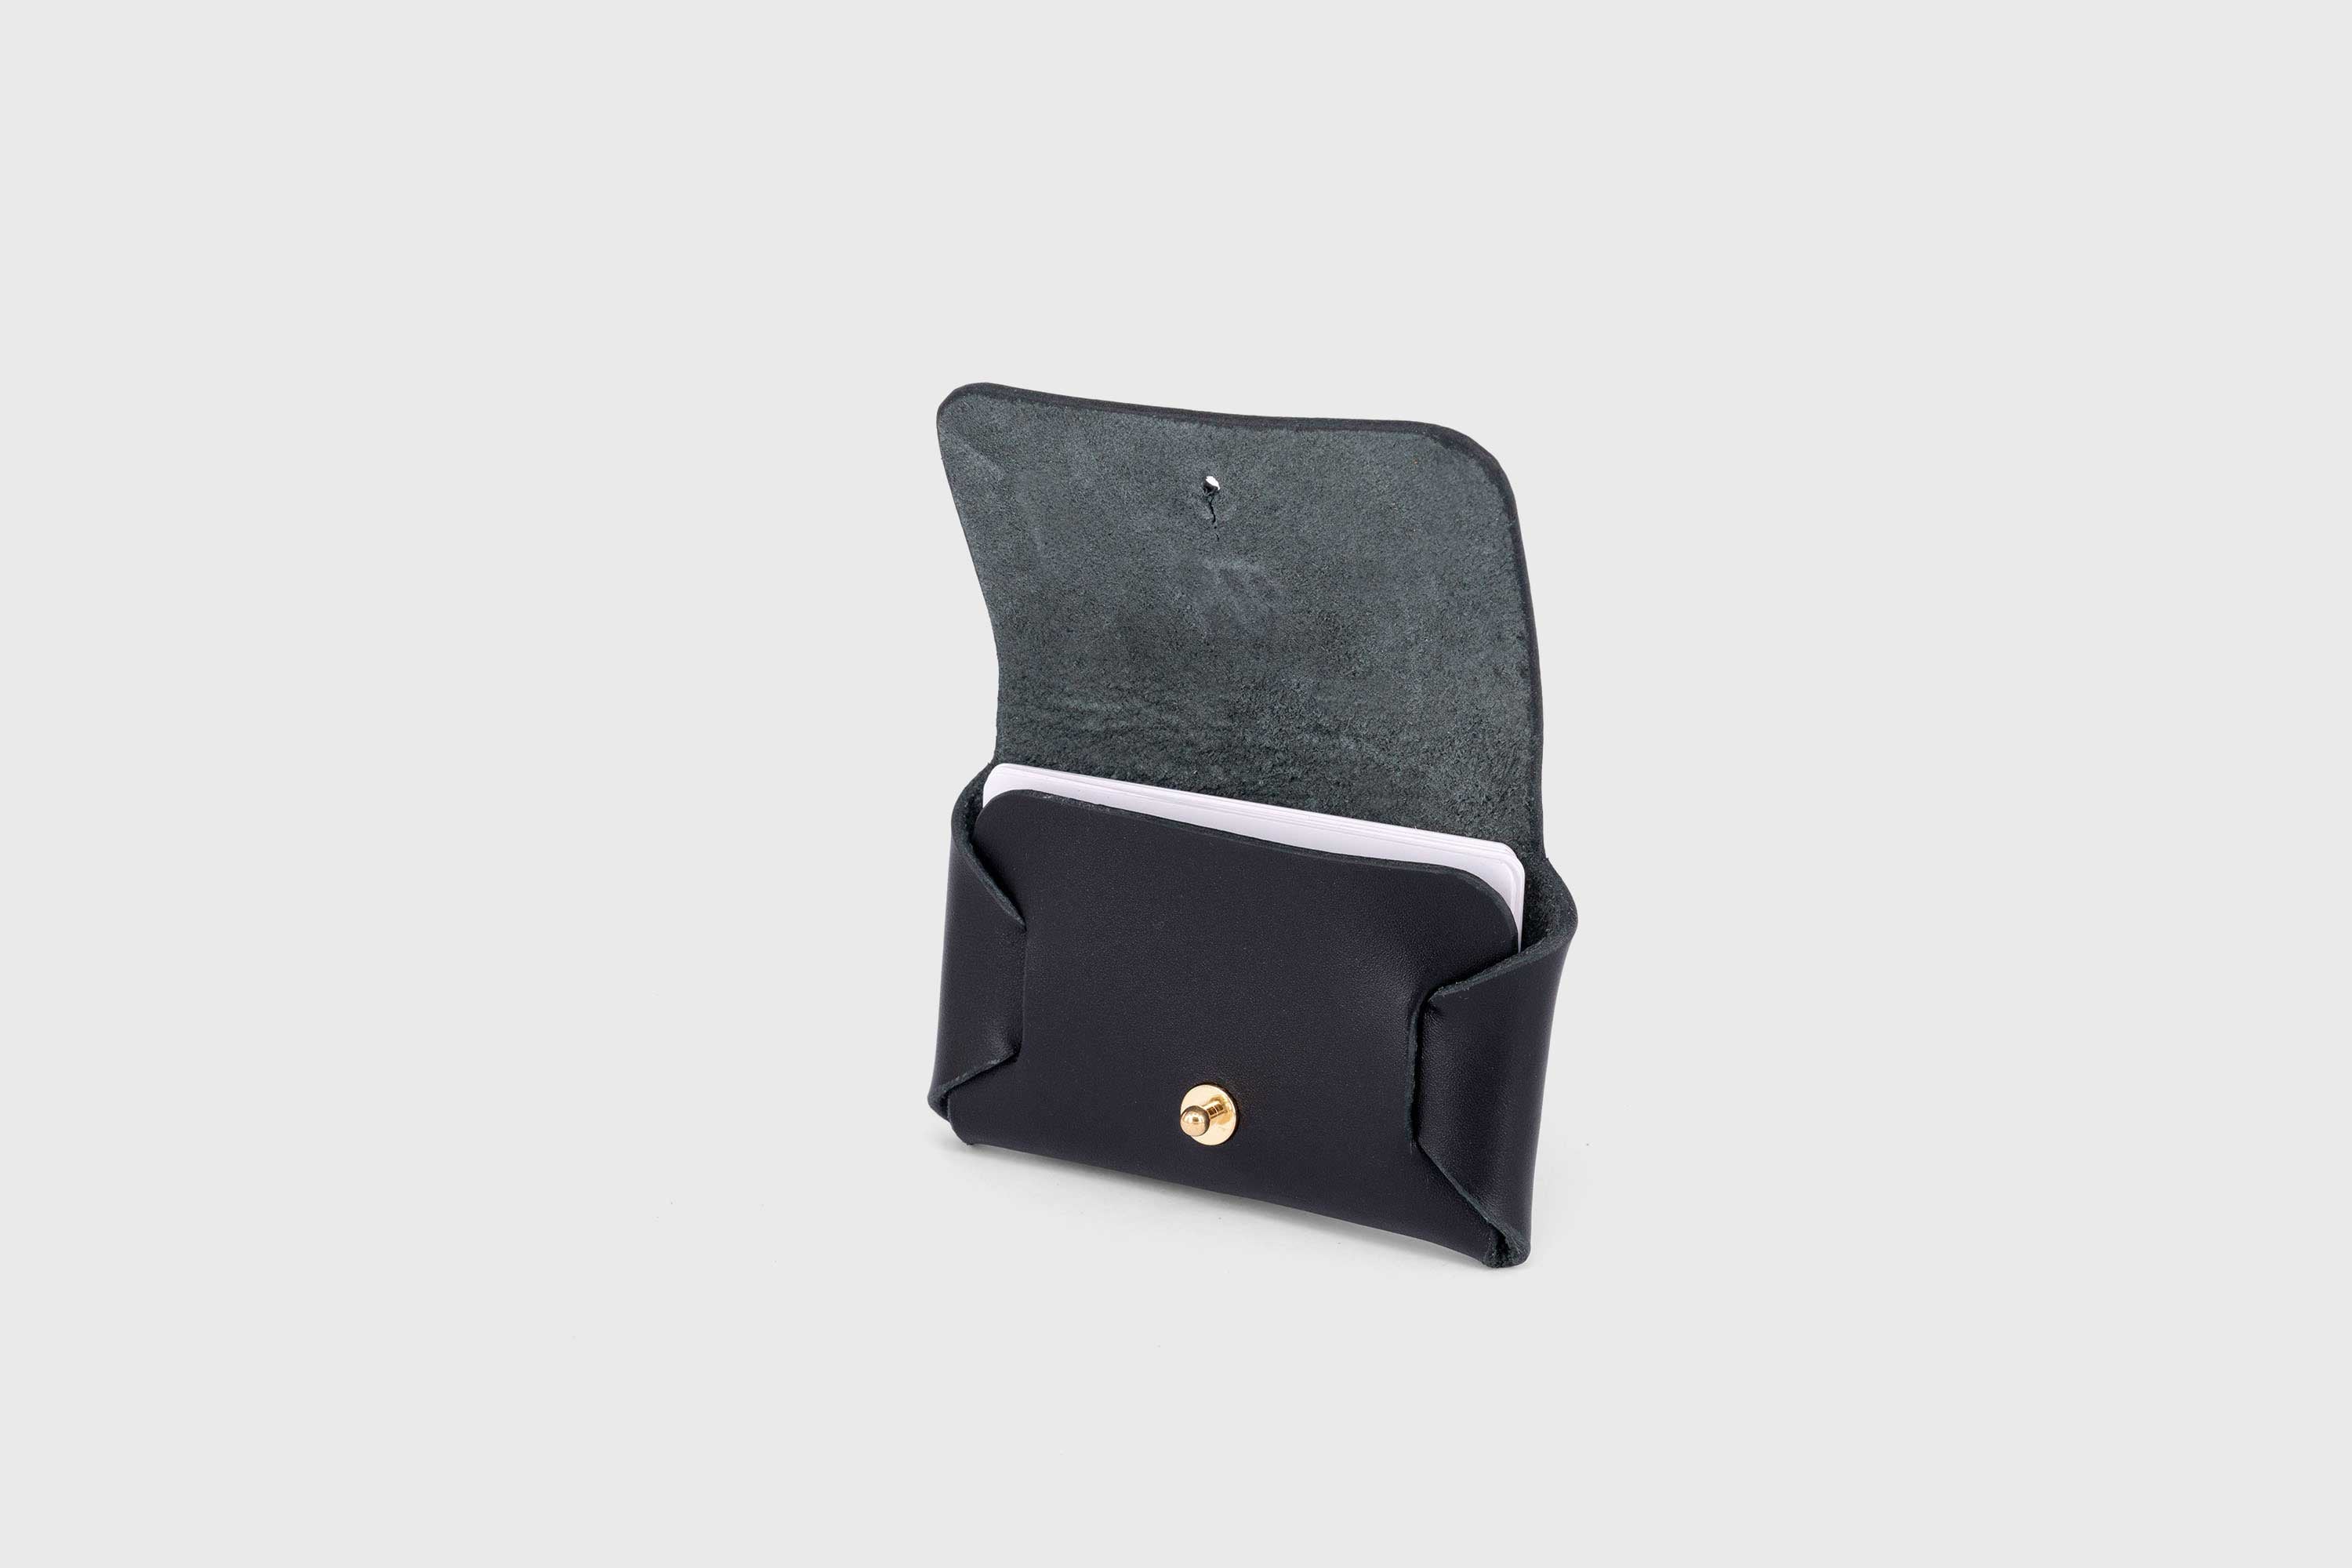 Leather wallet cardholder horizontal design black color minimalist design atelier madre manuel dreesmann barcelona